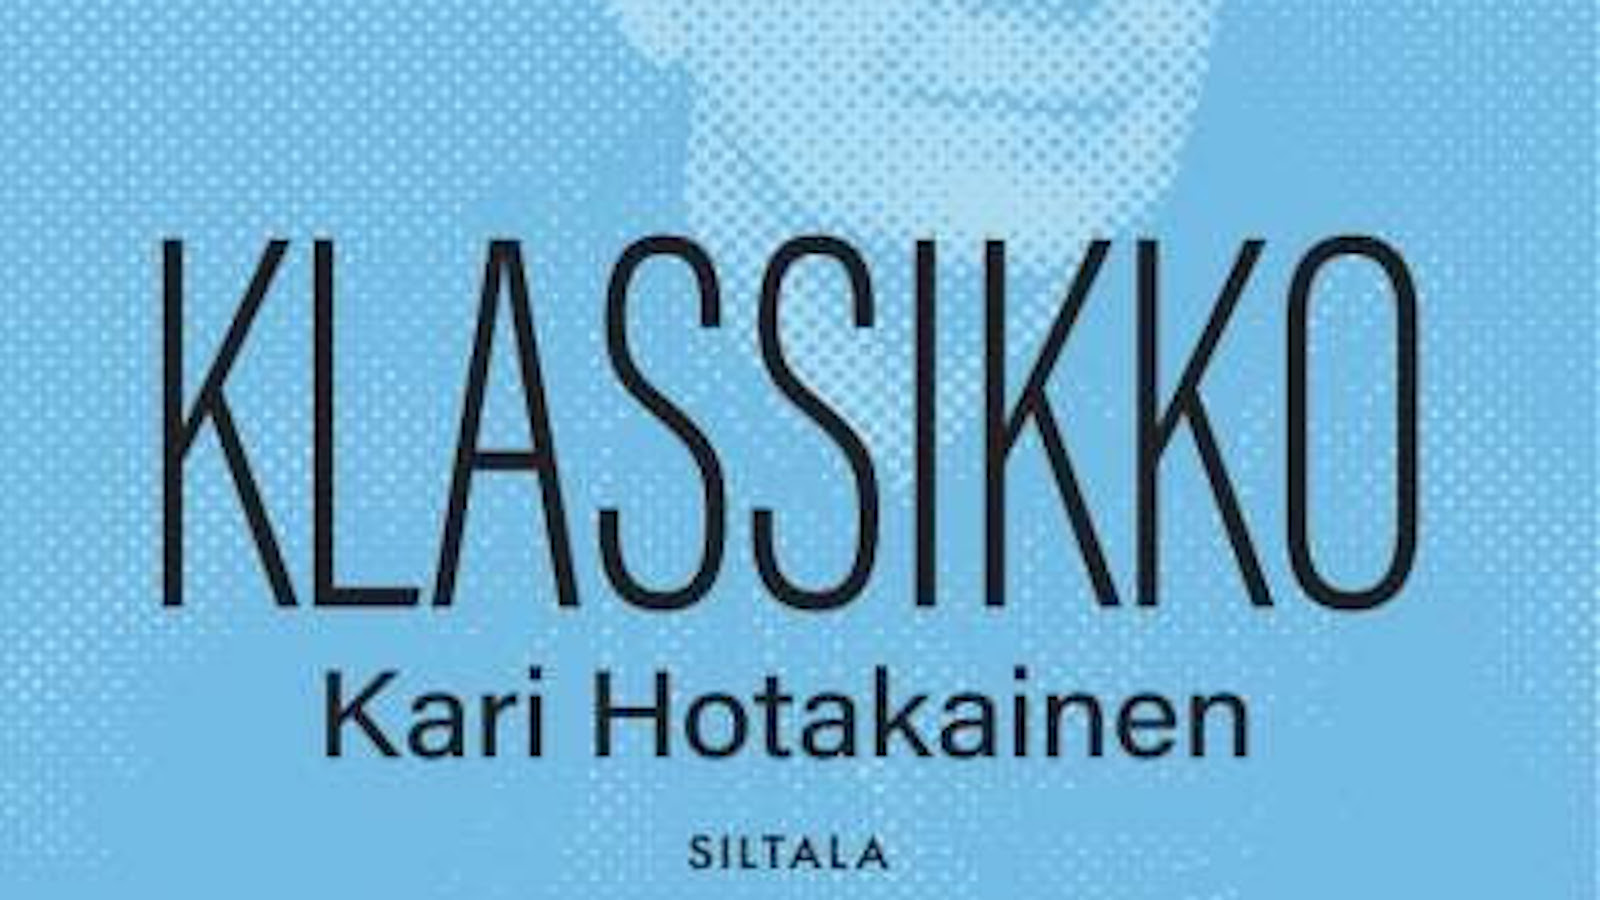 Kari Hotakaisen kirja Huolimattomat ilmestyy äänikirjana syksyllä 2021